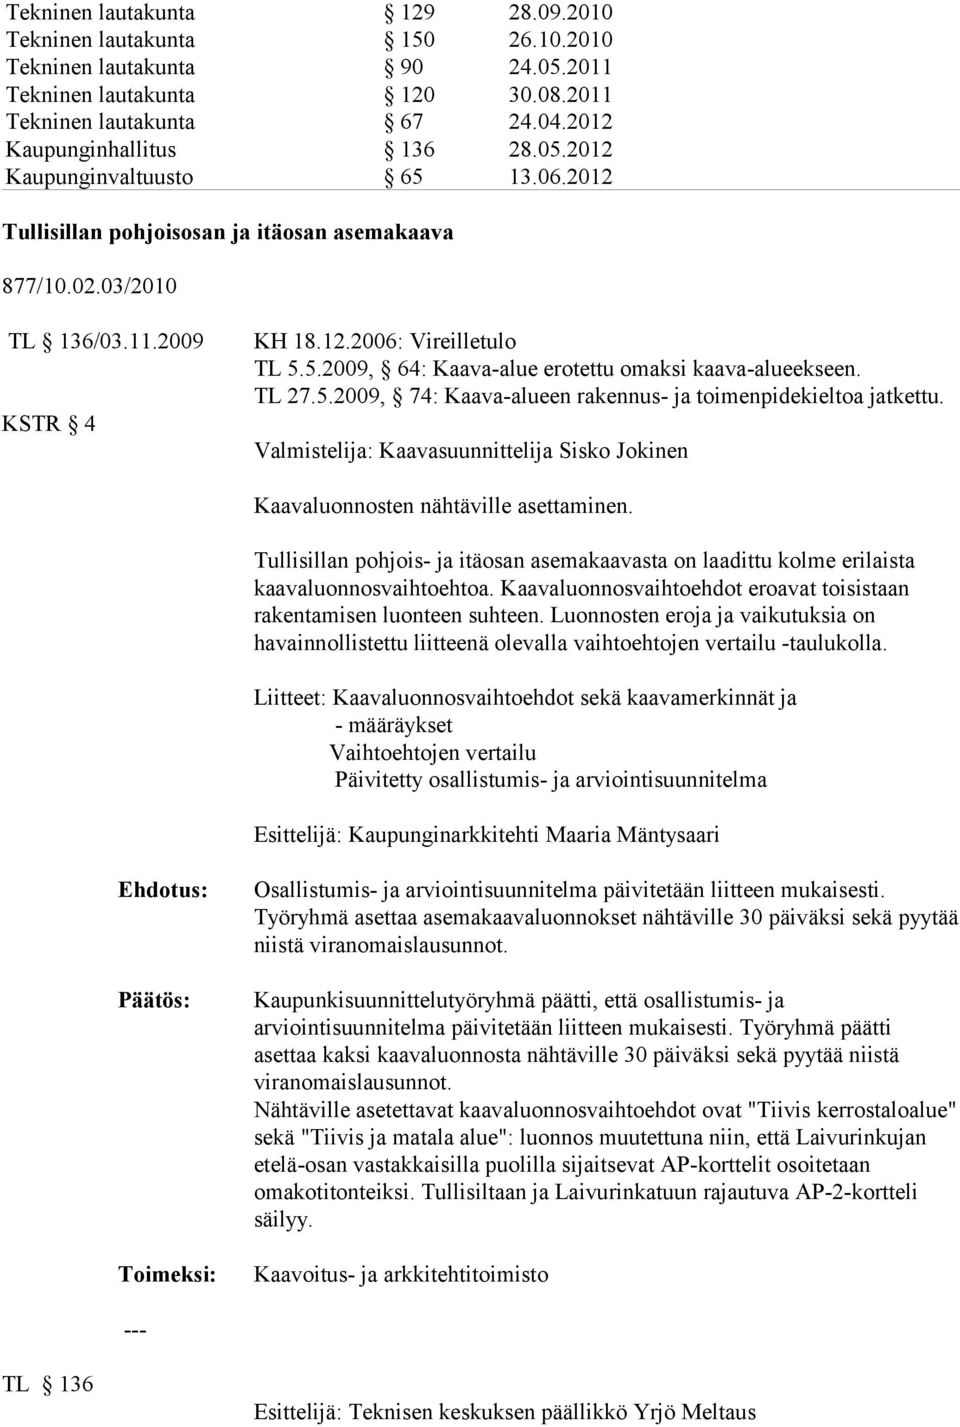 TL 27.5.2009, 74: Kaava-alueen rakennus- ja toimenpidekieltoa jatkettu. Valmistelija: Kaavasuunnittelija Sisko Jokinen Kaavaluonnosten nähtäville asettaminen.